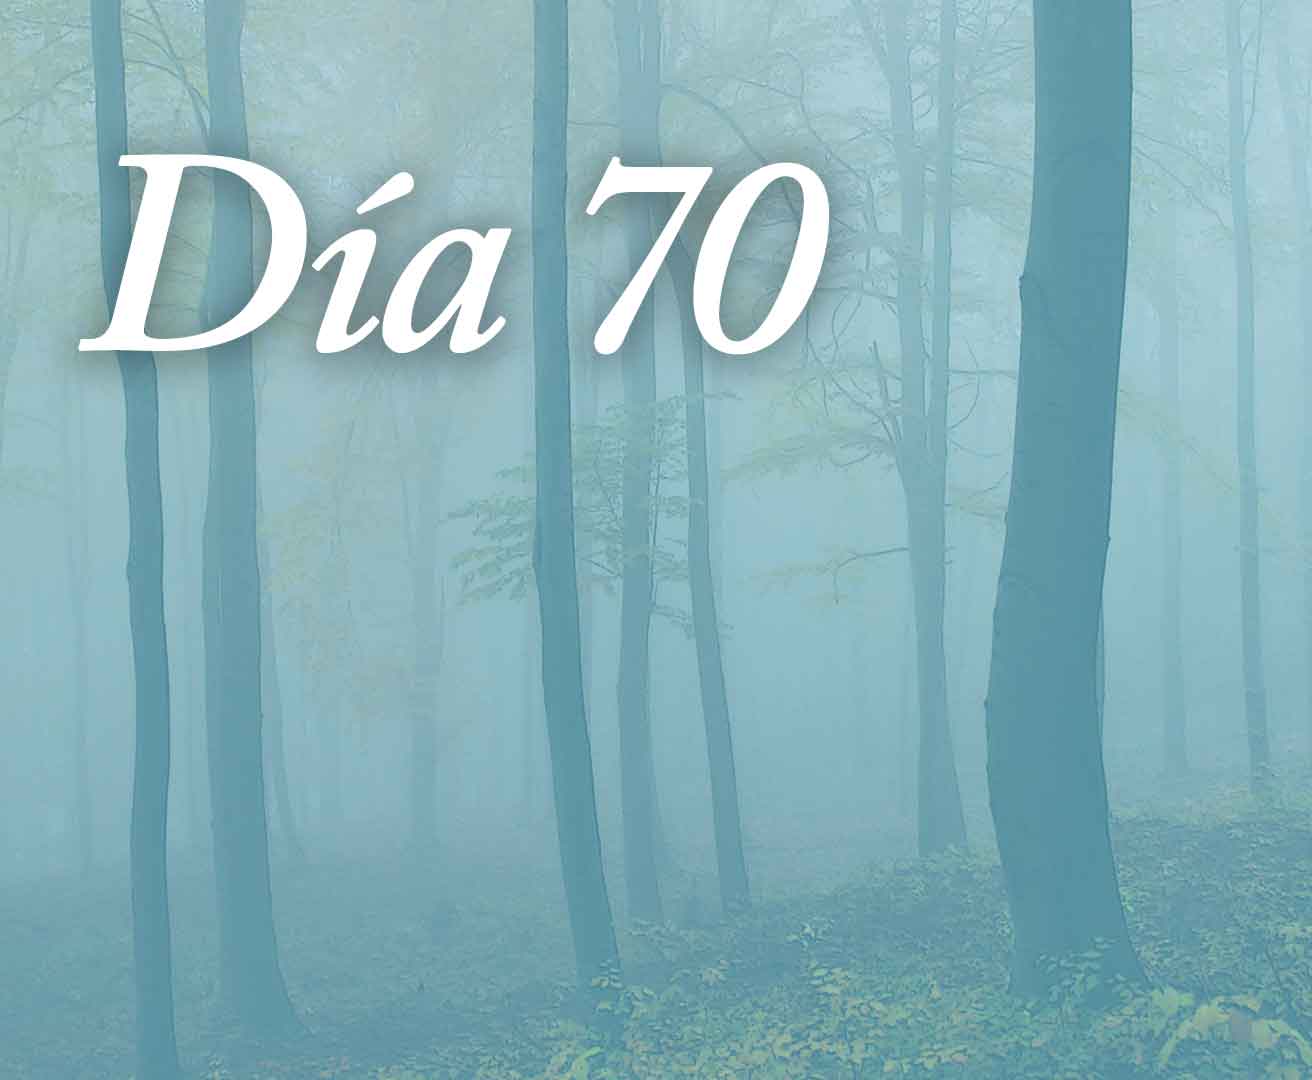 Día 70 - Apreciar y agradecer